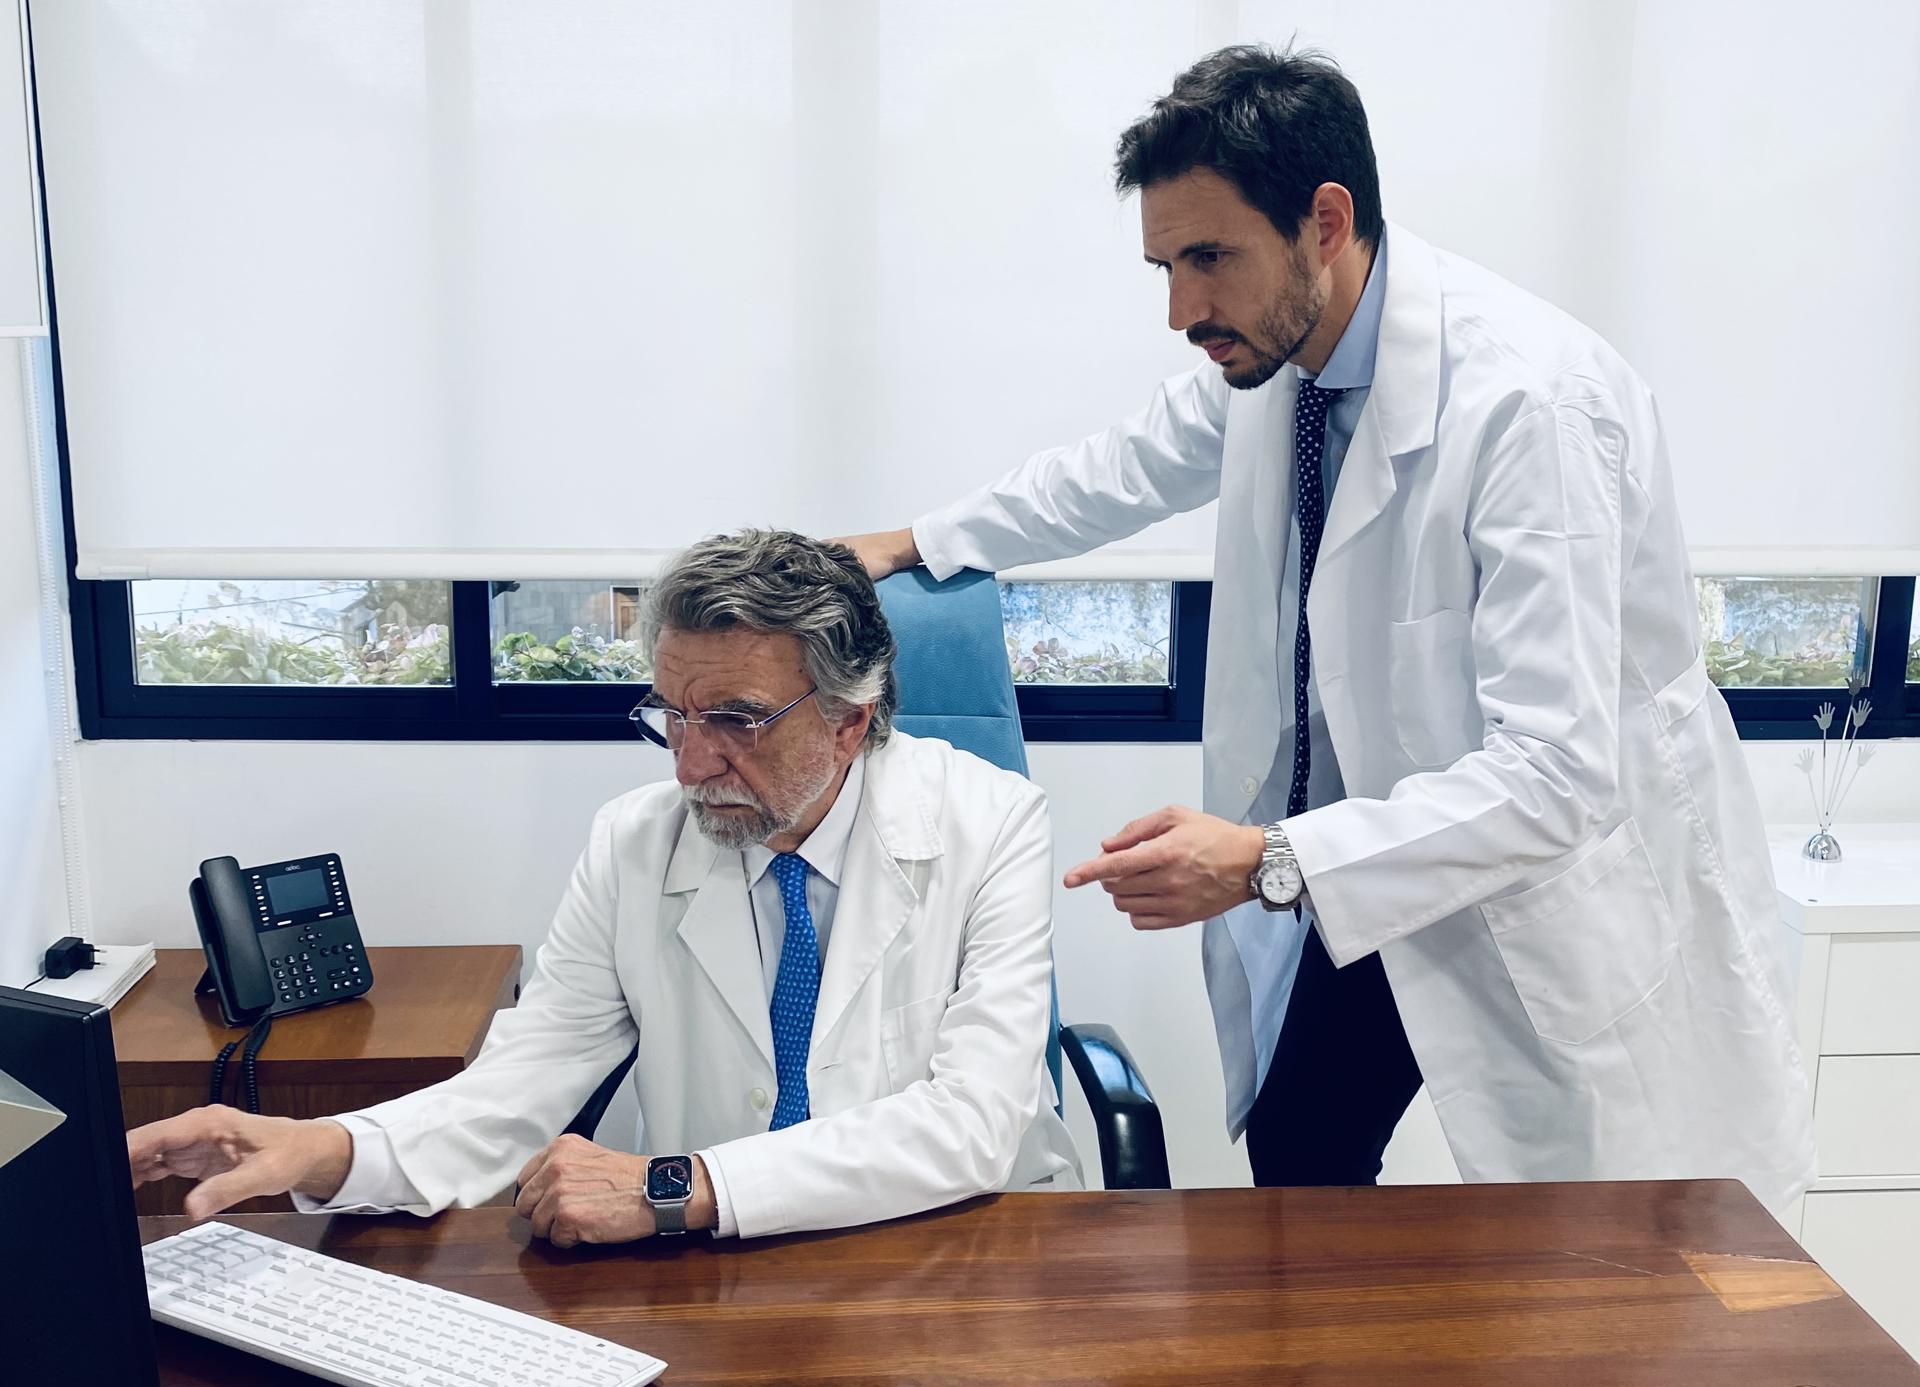 El doctor Antonio Escribano Zafra y su hijo, el doctor Antonio Escribano Ocón, durante el trabajo que realizaron para la película "La Sociedad de la Nieve".EFE/ Cedida por Antonio Escribano